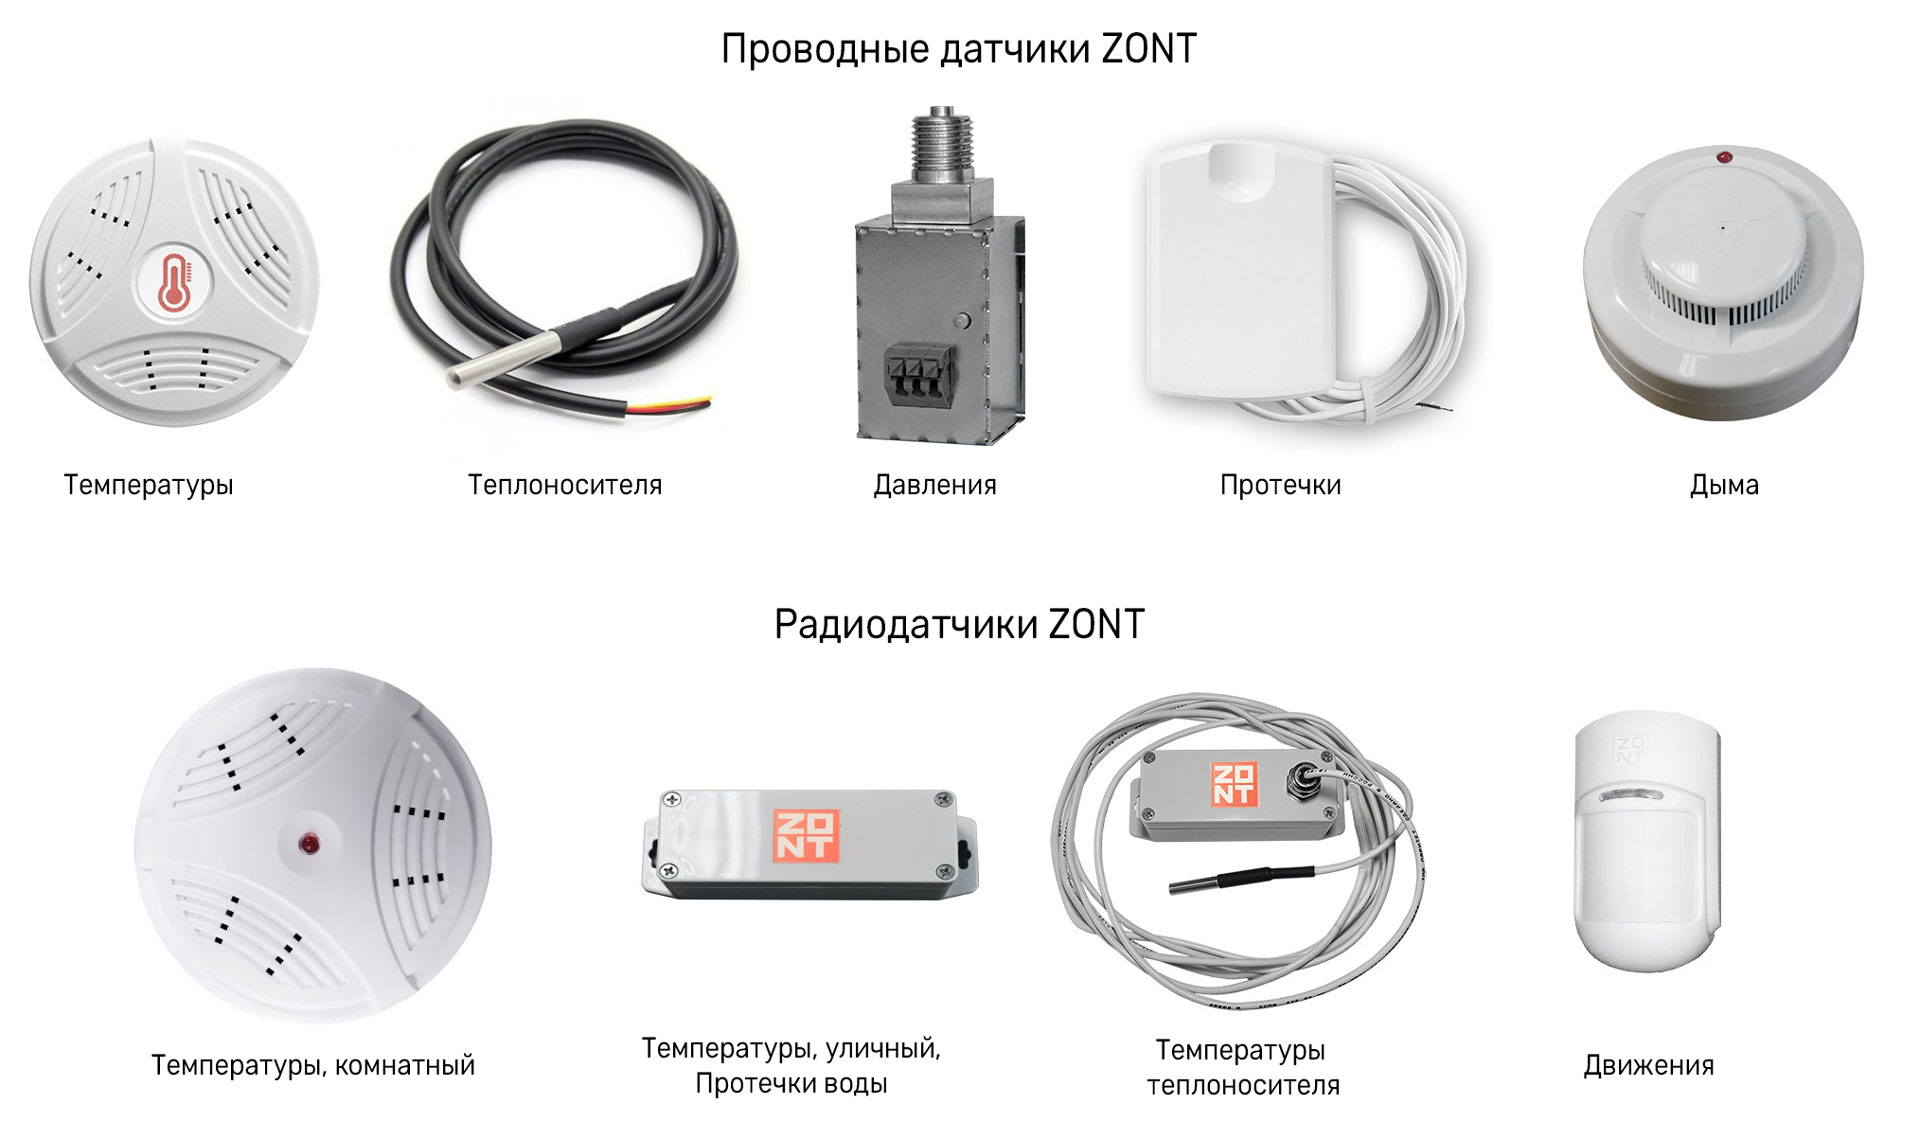 Zont радиодатчик. Датчик беспроводной Zont мл-740. Датчик теплоносителя Zont. Zont 1v датчик давления. Zont Smart датчик с резьбовой.